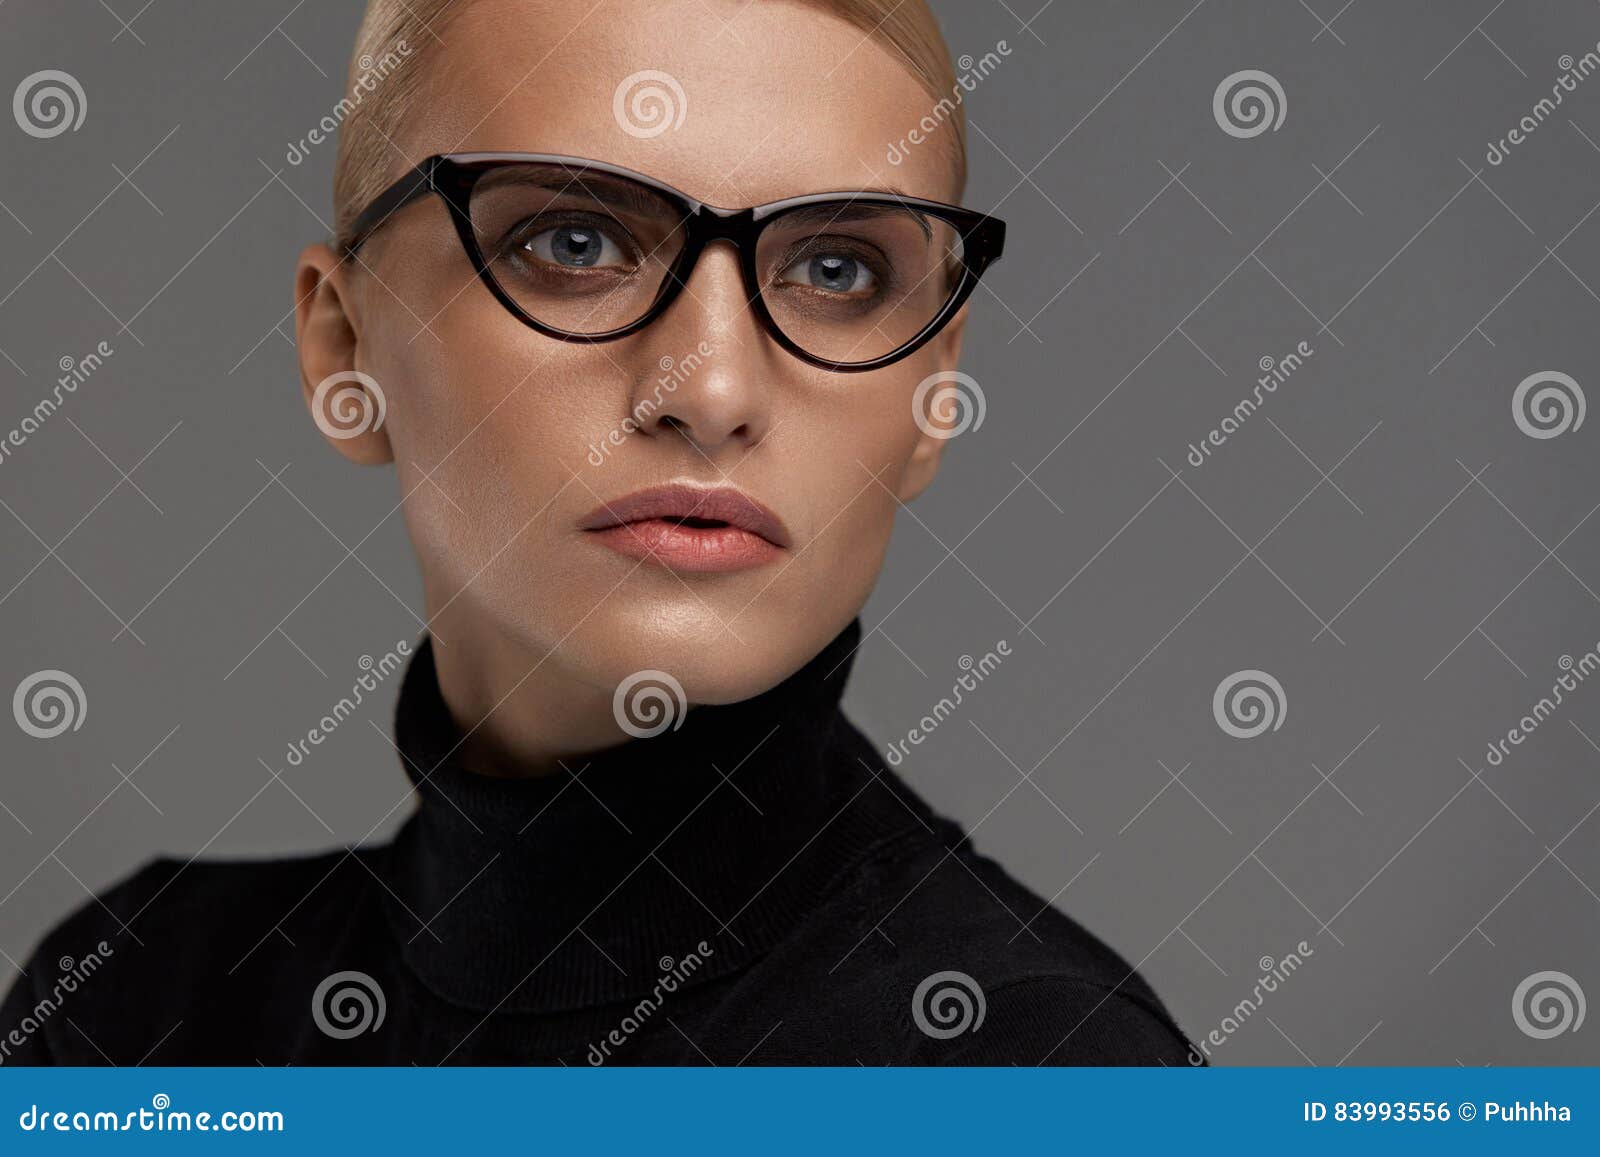 Female Eyeglasses Beautiful Woman In Glasses Eyewear